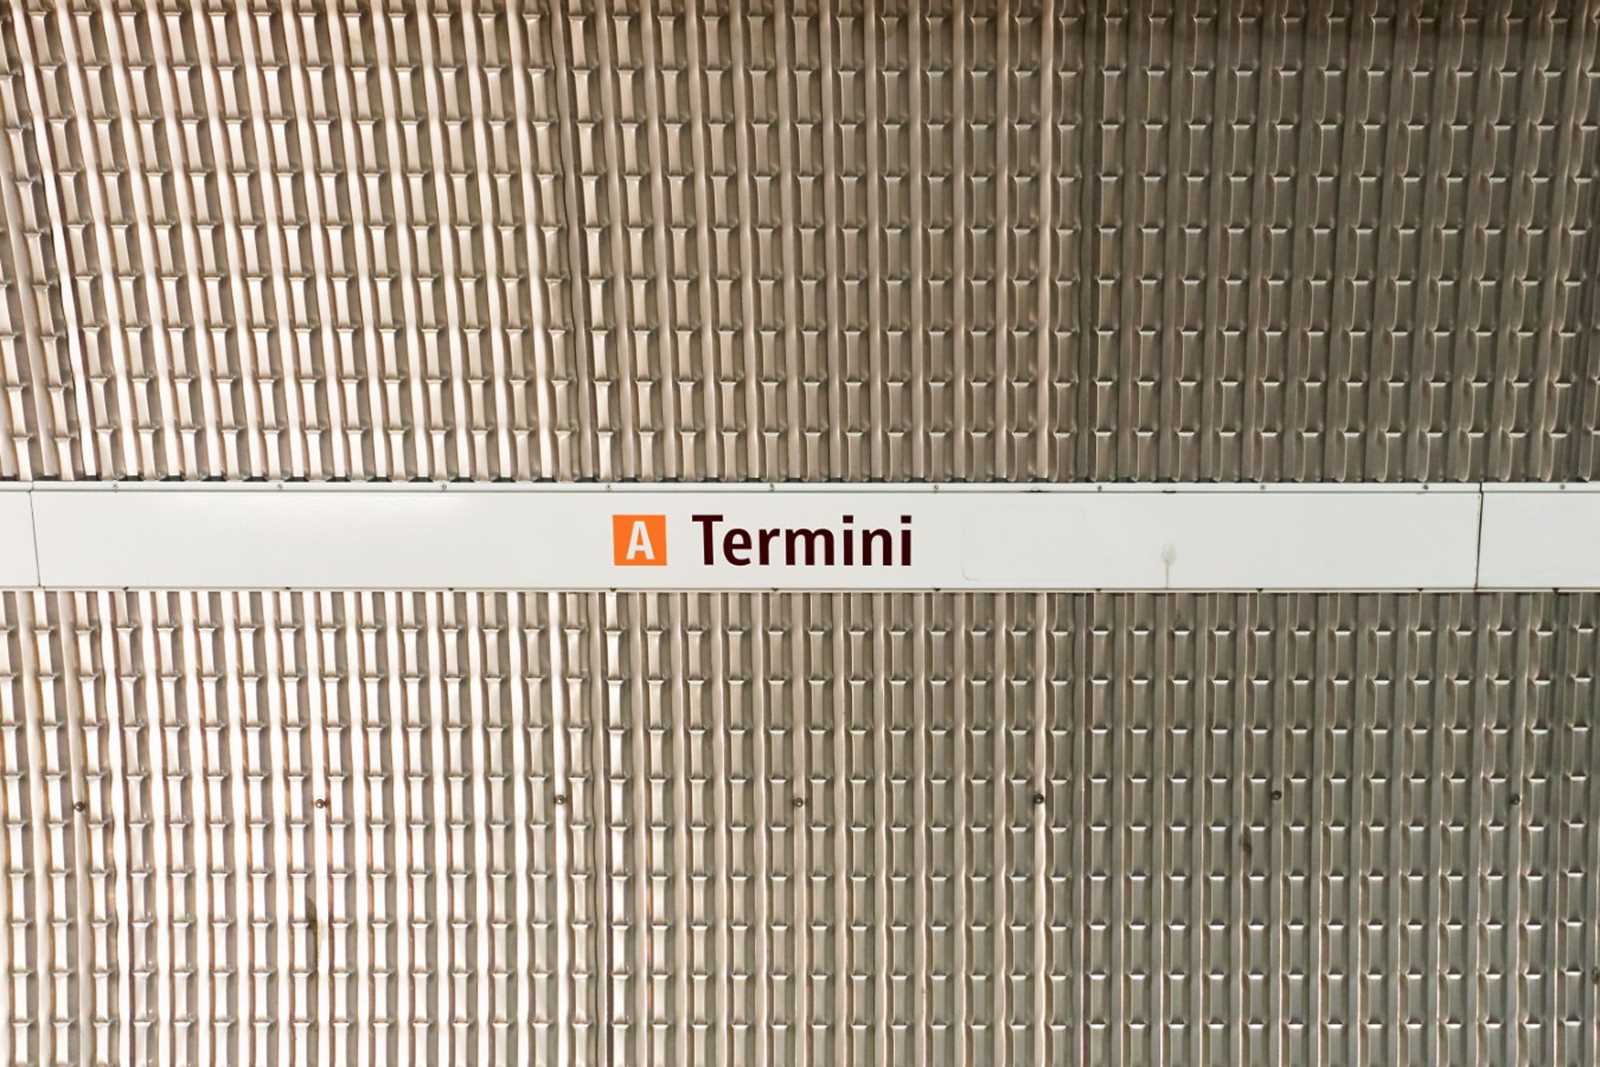 Roma Termini Airport